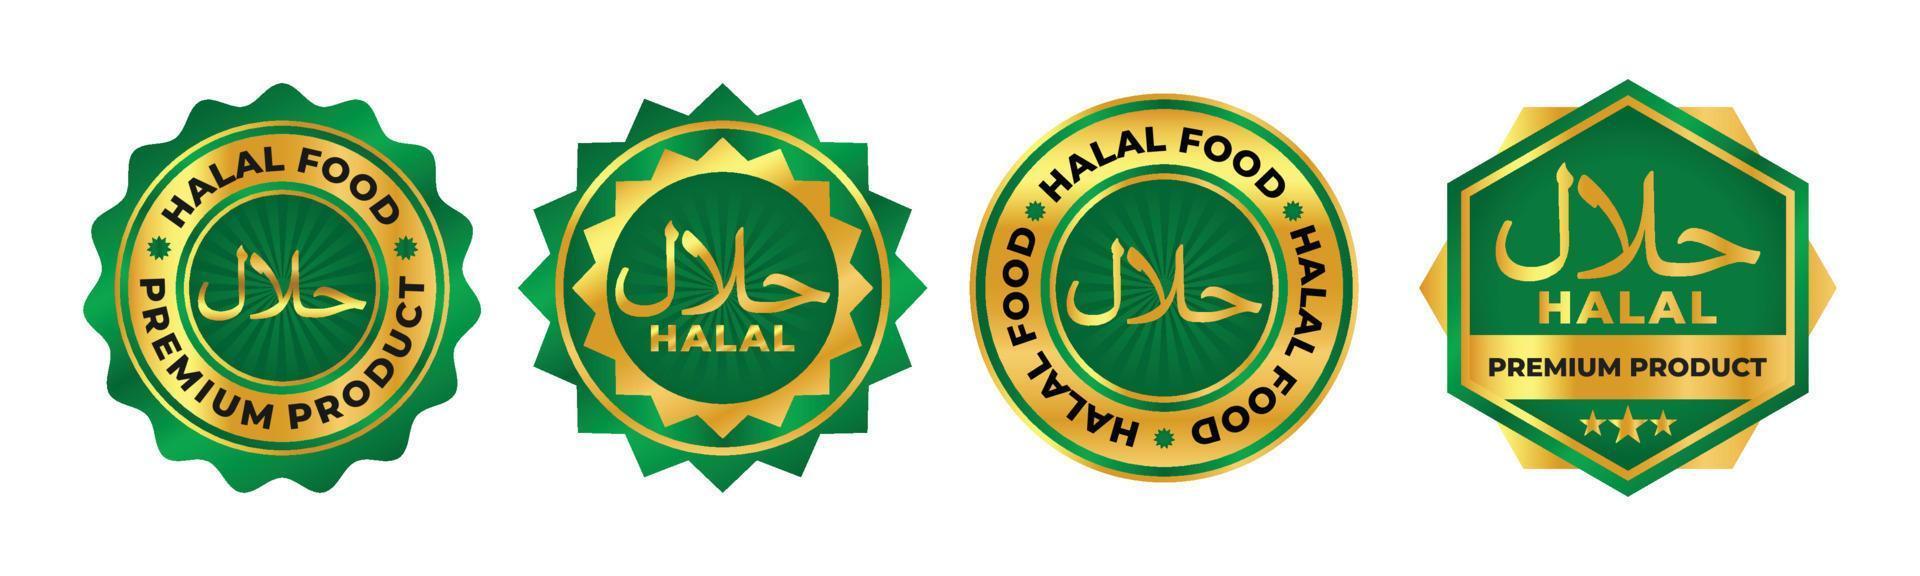 nourriture halal et vecteur de logo d'insigne de produit avec la couleur verte et or